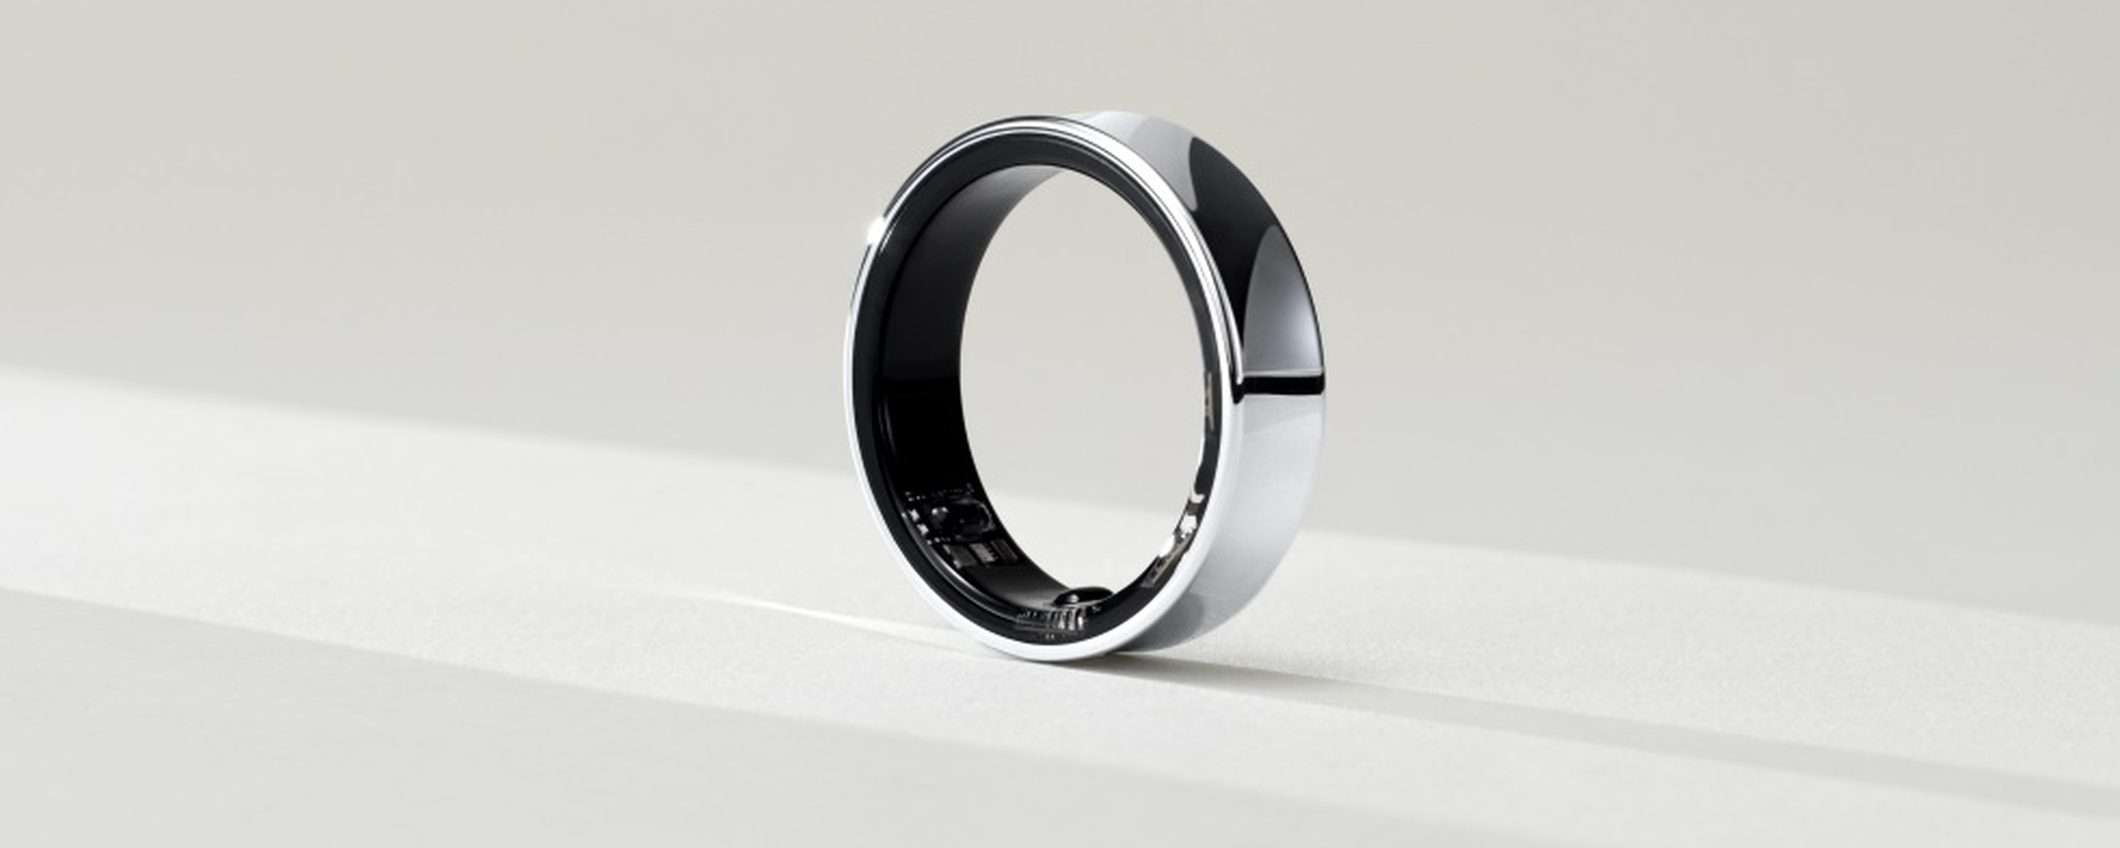 Samsung Galaxy Ring: c'è aria di ottimismo